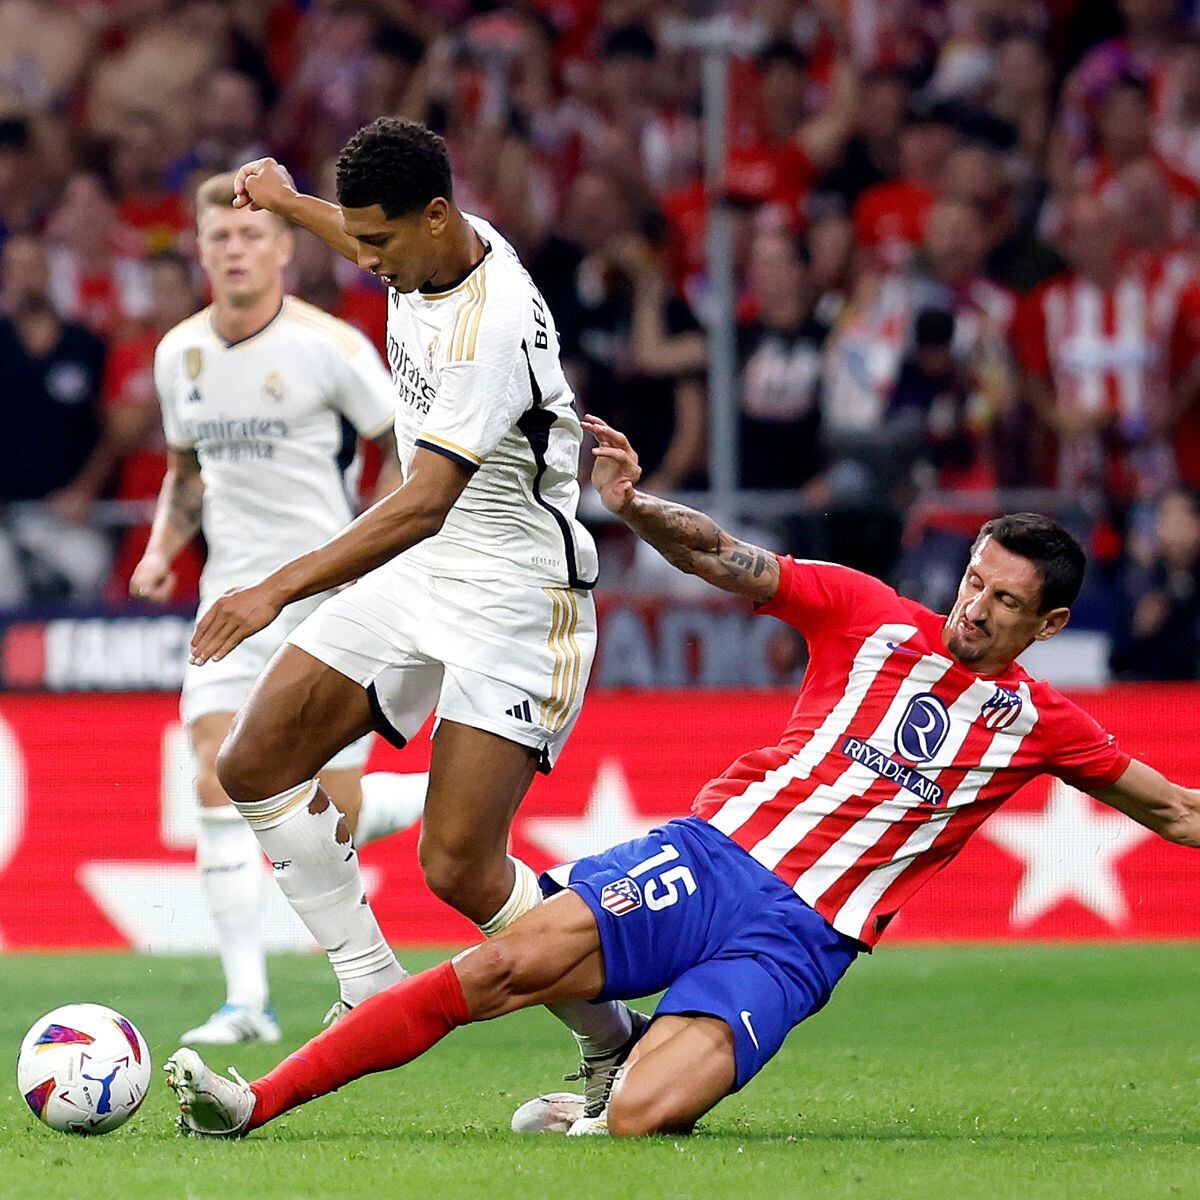 Se viene la trilogía entre Atlético y Real Madrid, con muchos